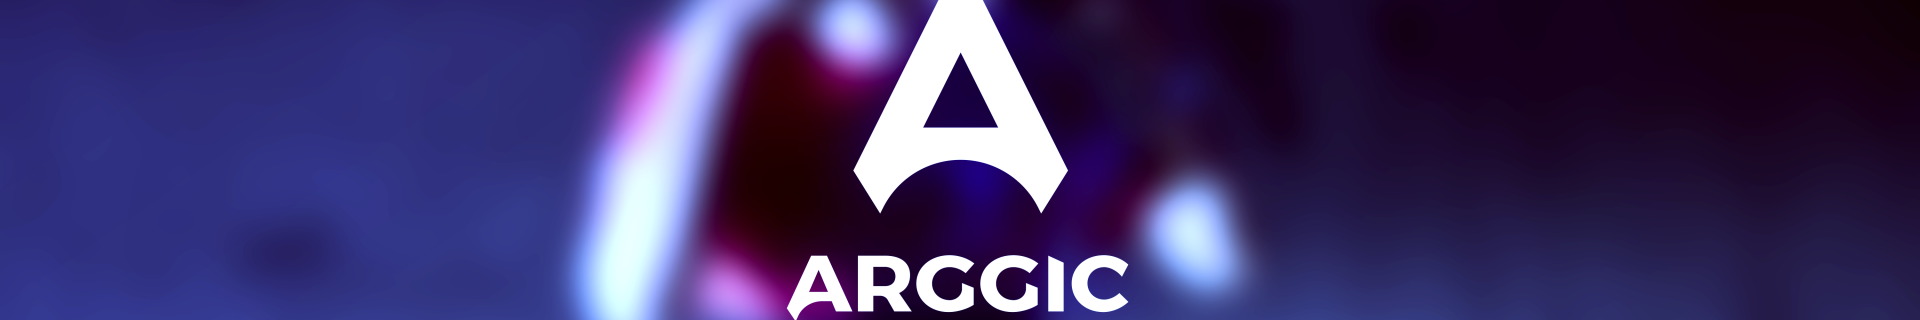 Arggic profile cover